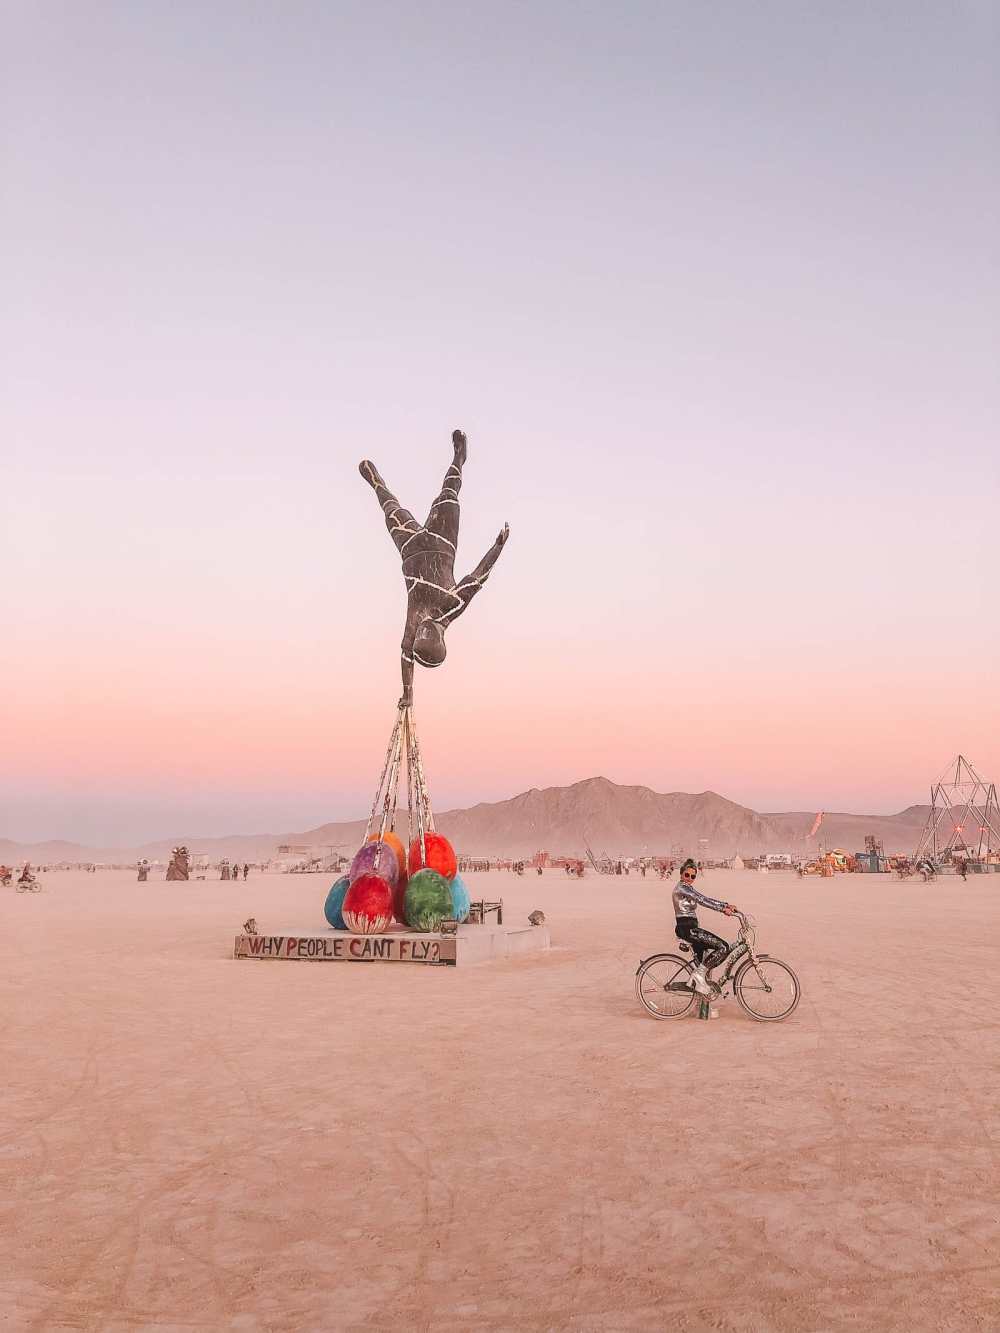  Руководство для начинающих по Burning Man (34) 